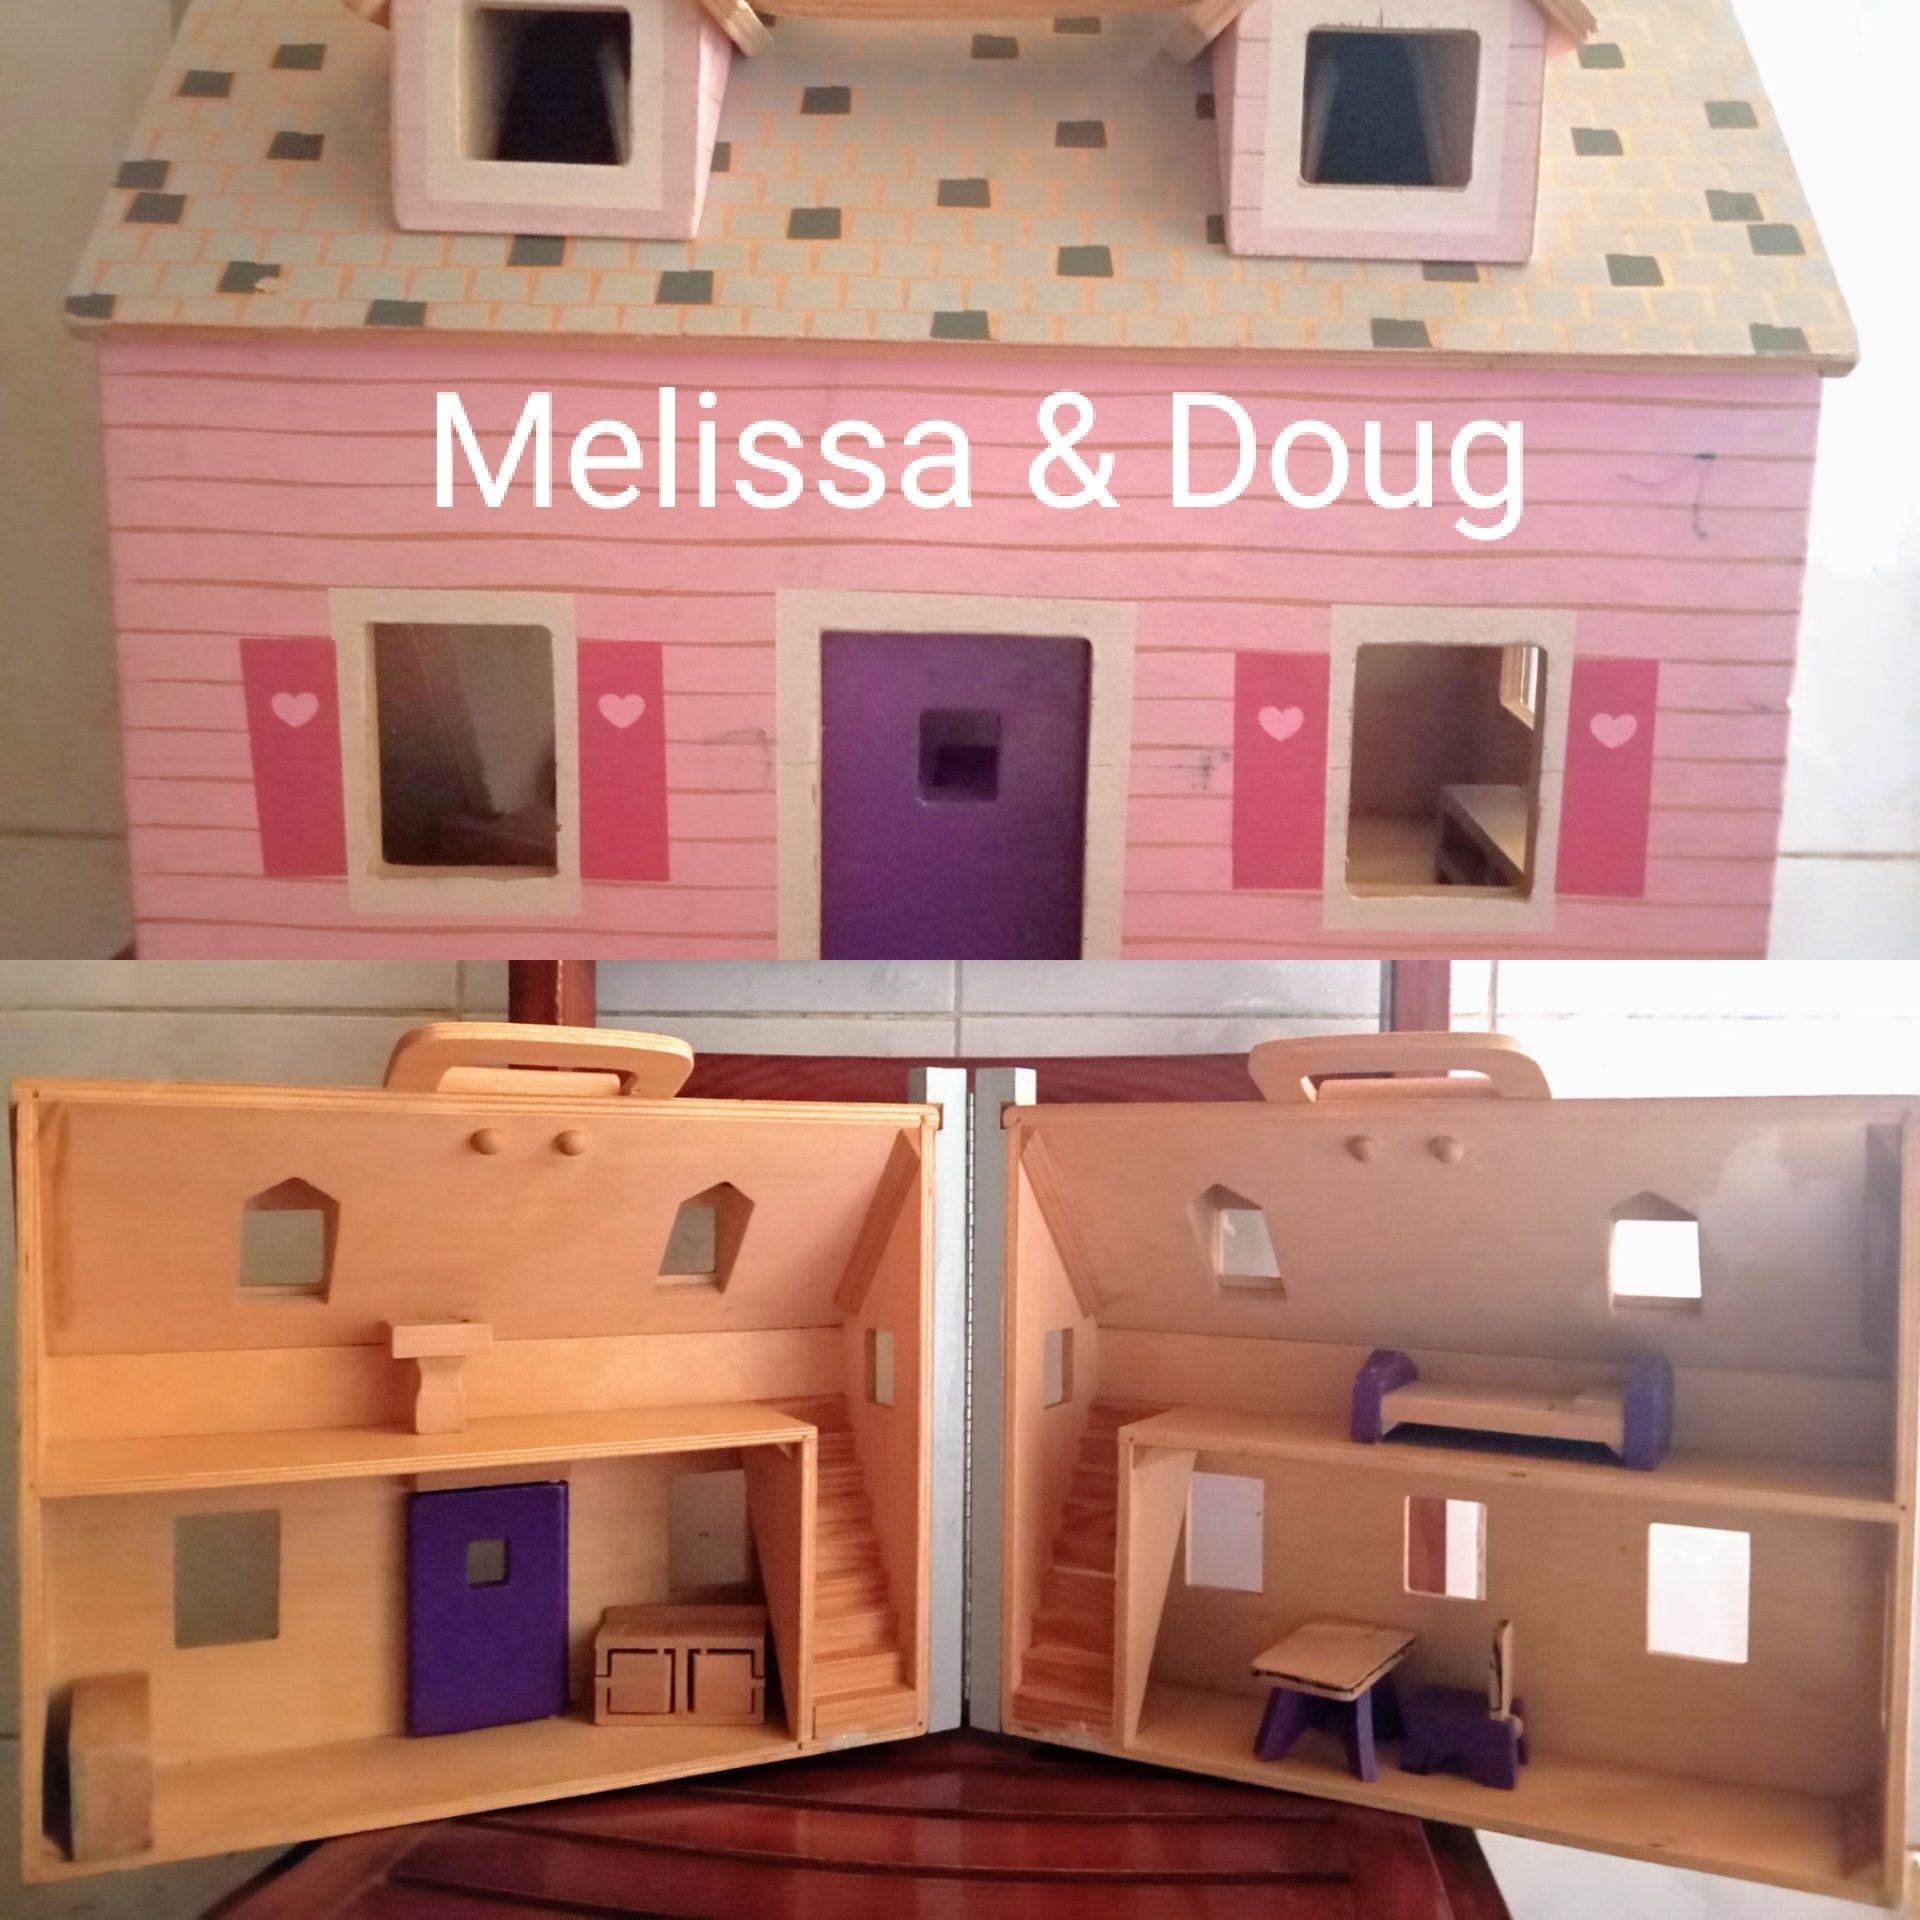 Casa de bonecas Melissa & Doug. Veja descrição.